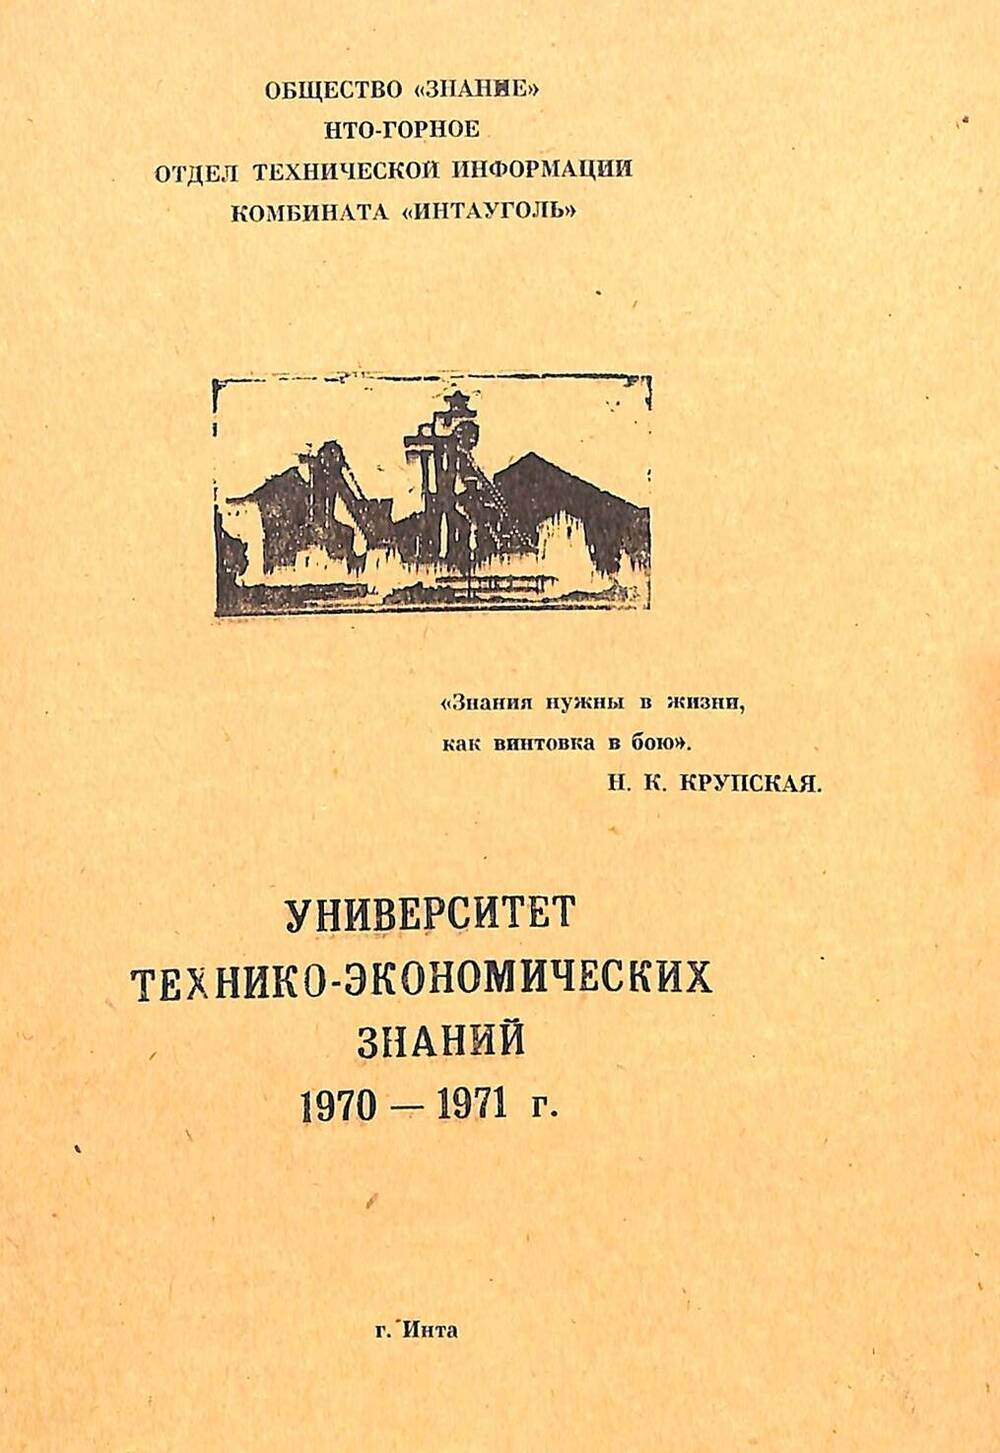 Документ Брошюра Программа университета технико-экономических знаний 1970-1971 г.